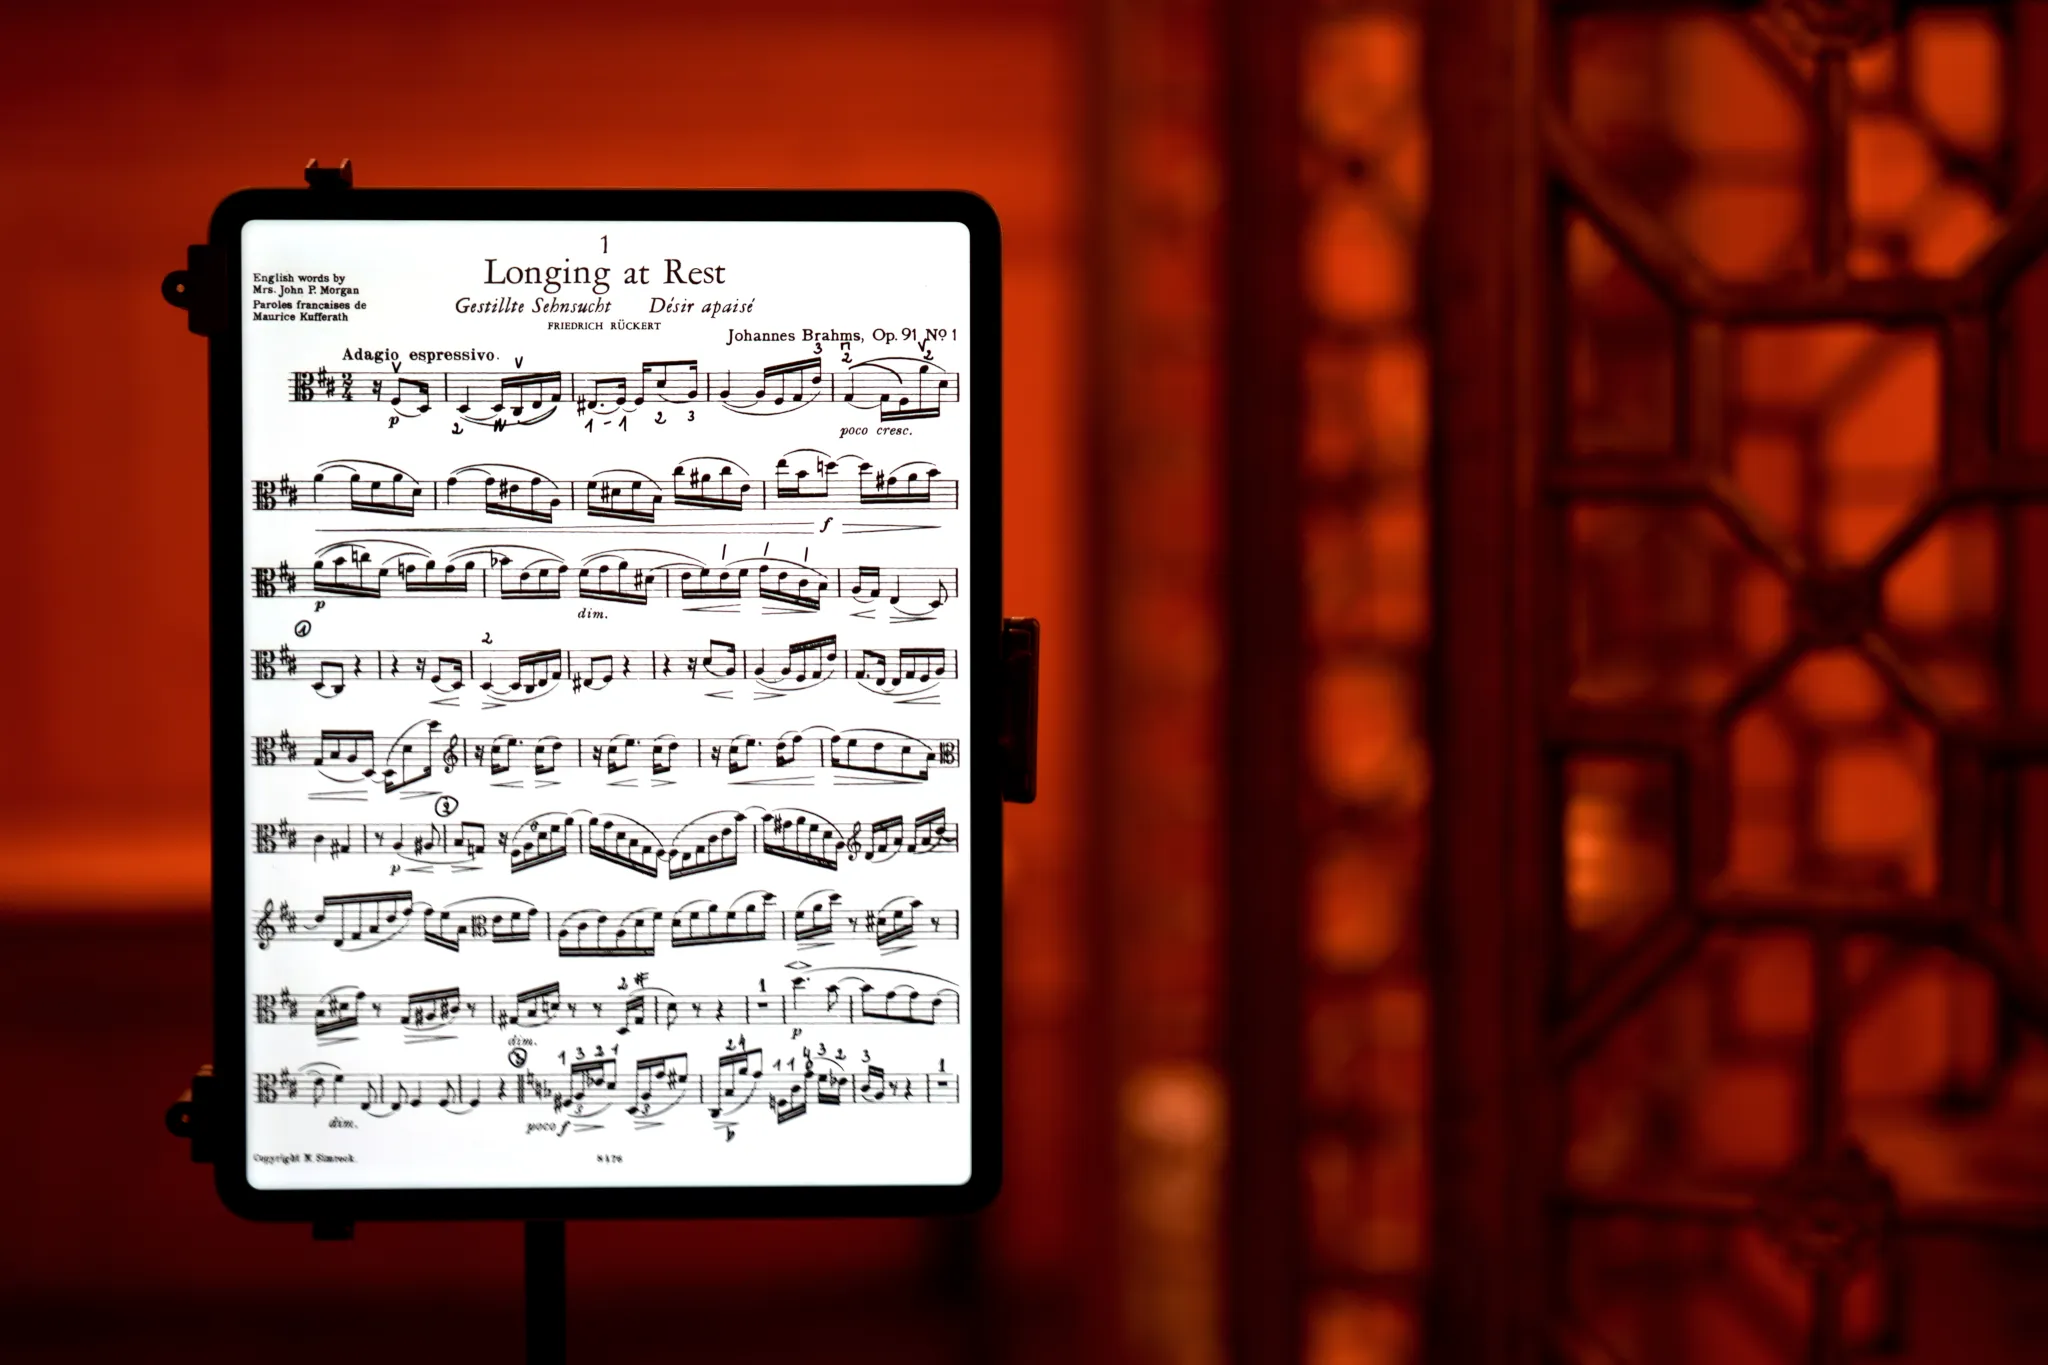 Le meilleur iPad pour lire des partitions de musique